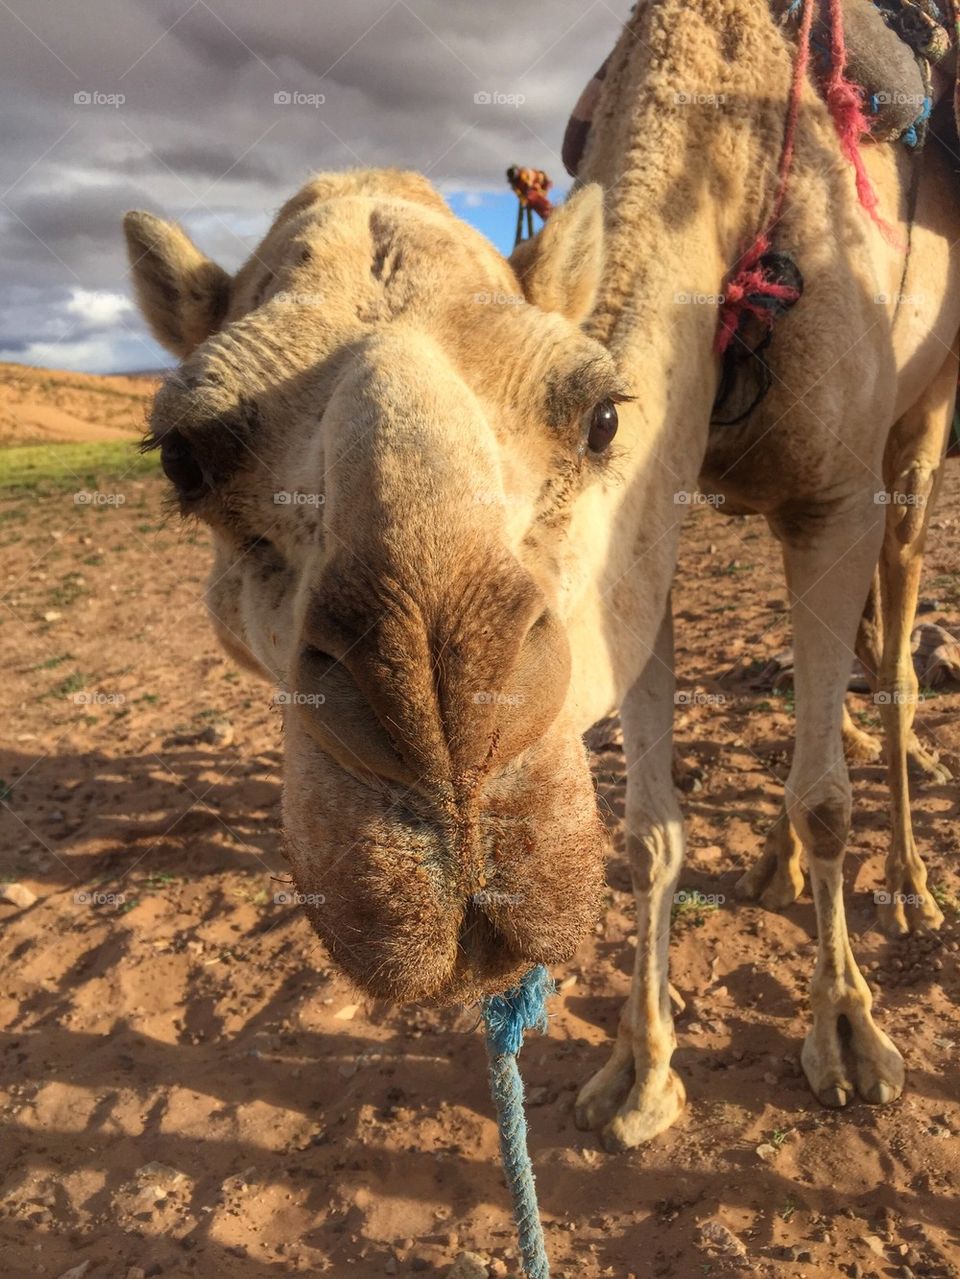 Bonding with my camel, Zagora, Morocco